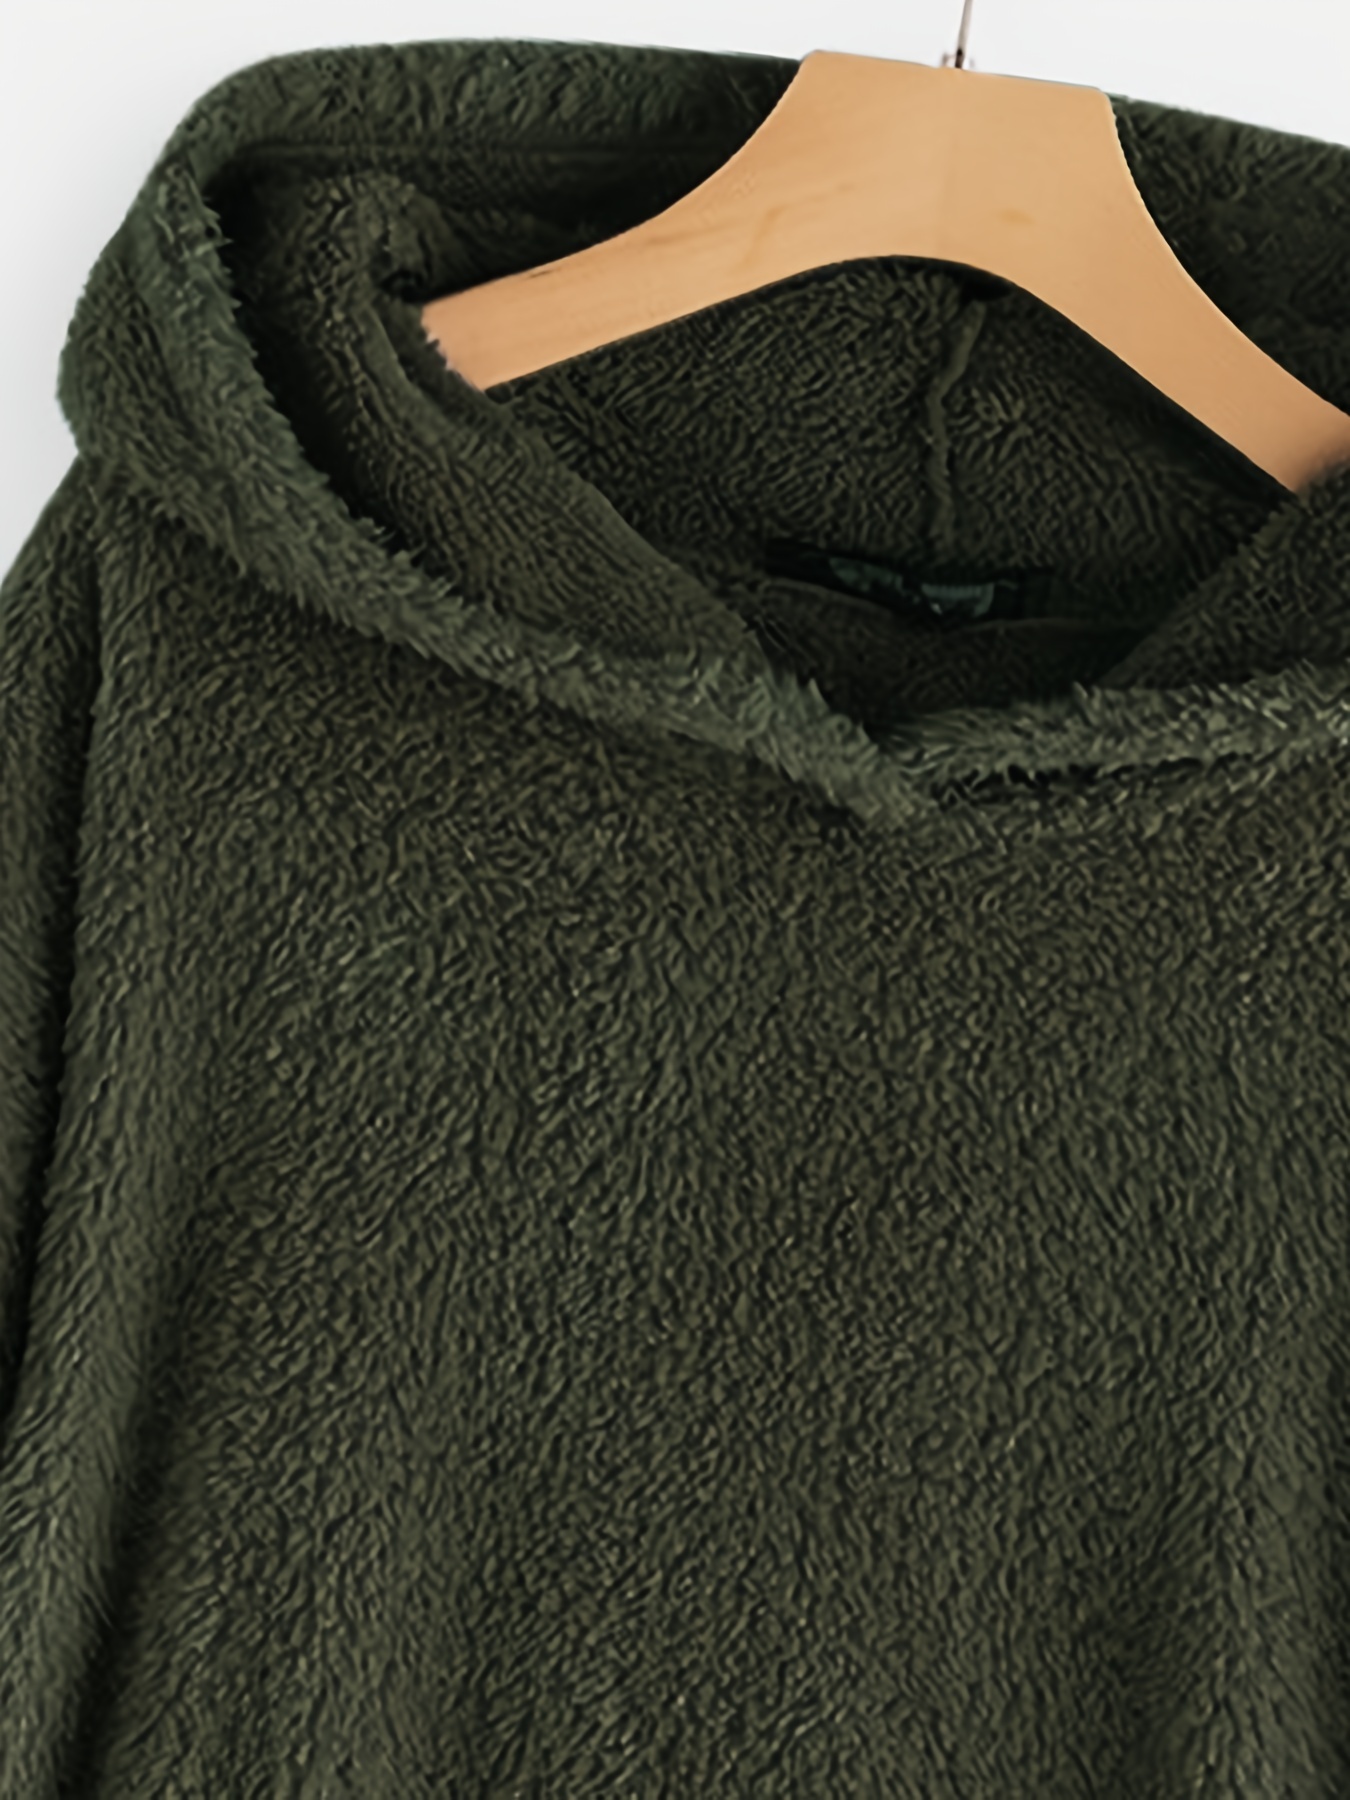 color block kangaroo pocket hoodie long sleeve thermal hoodies sweatshirt womens clothing details 13